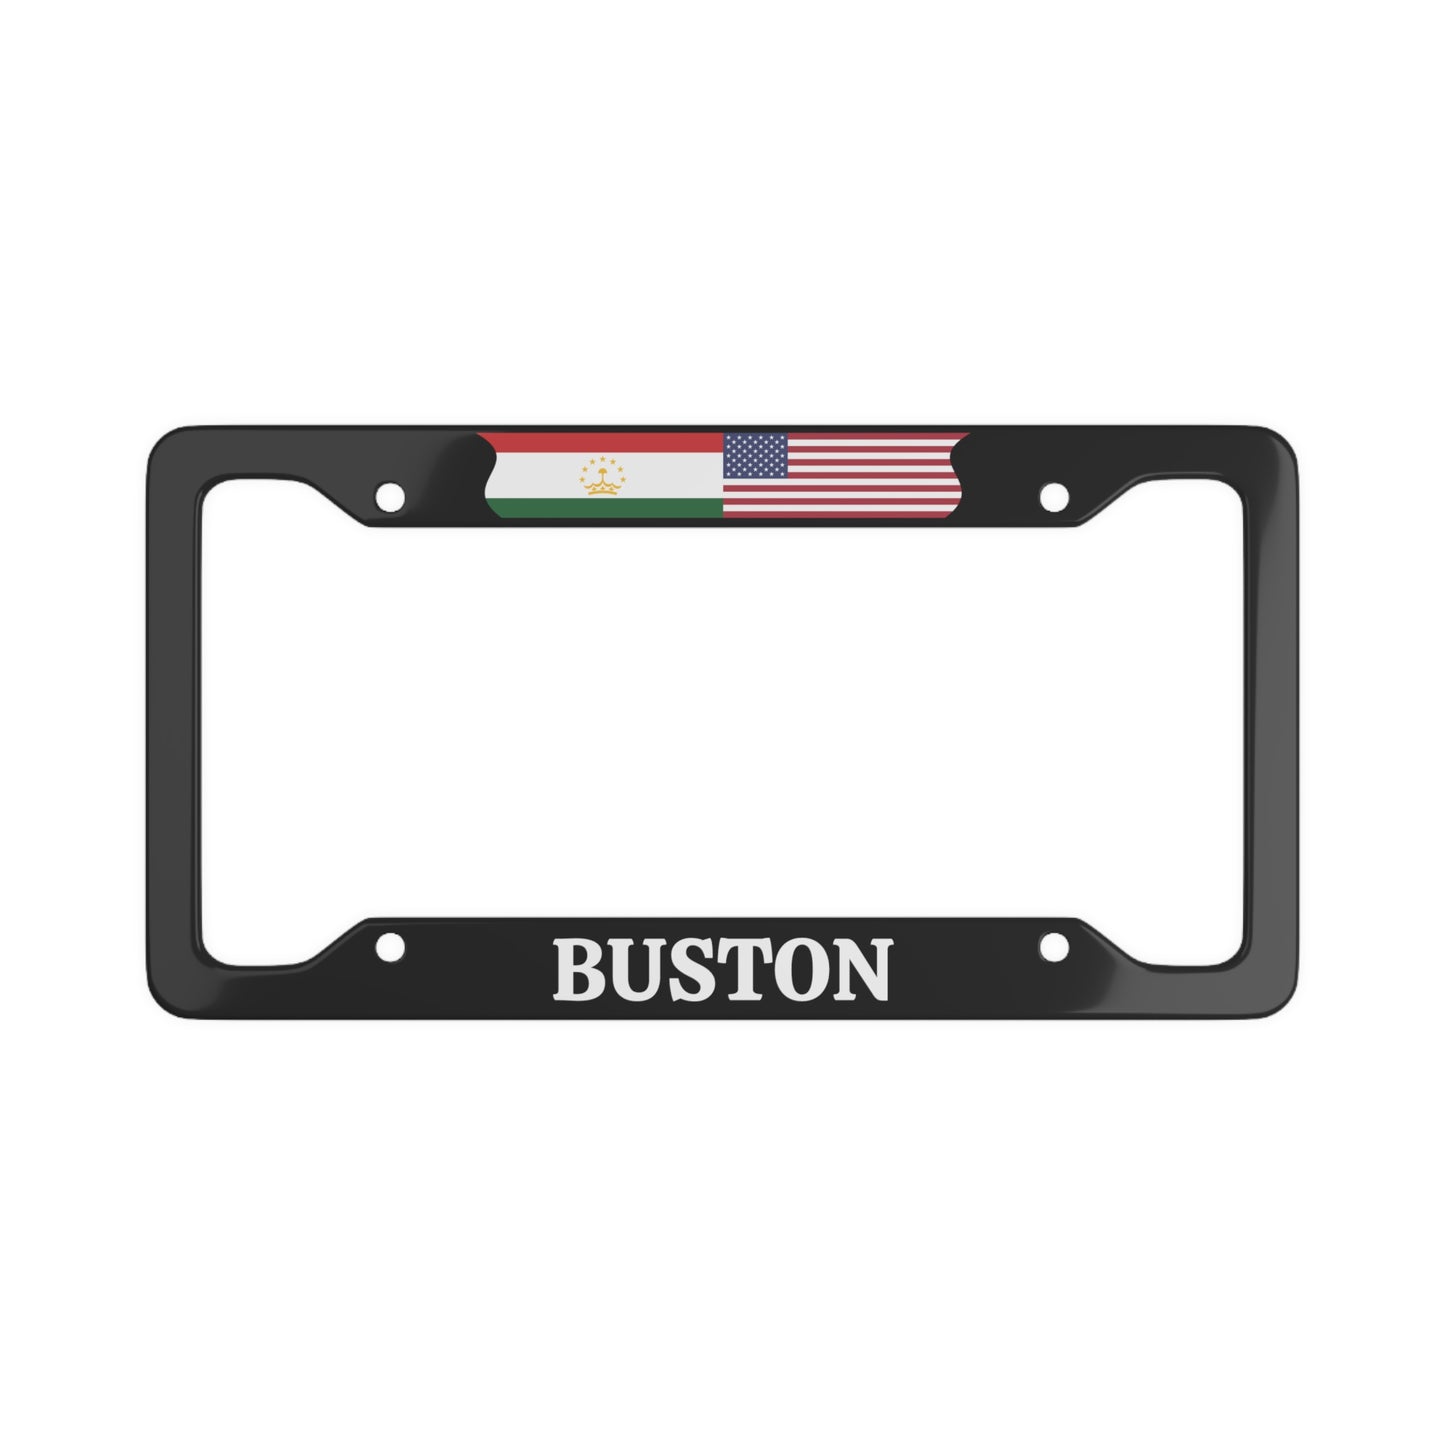 Buston TJK License Plate Frame